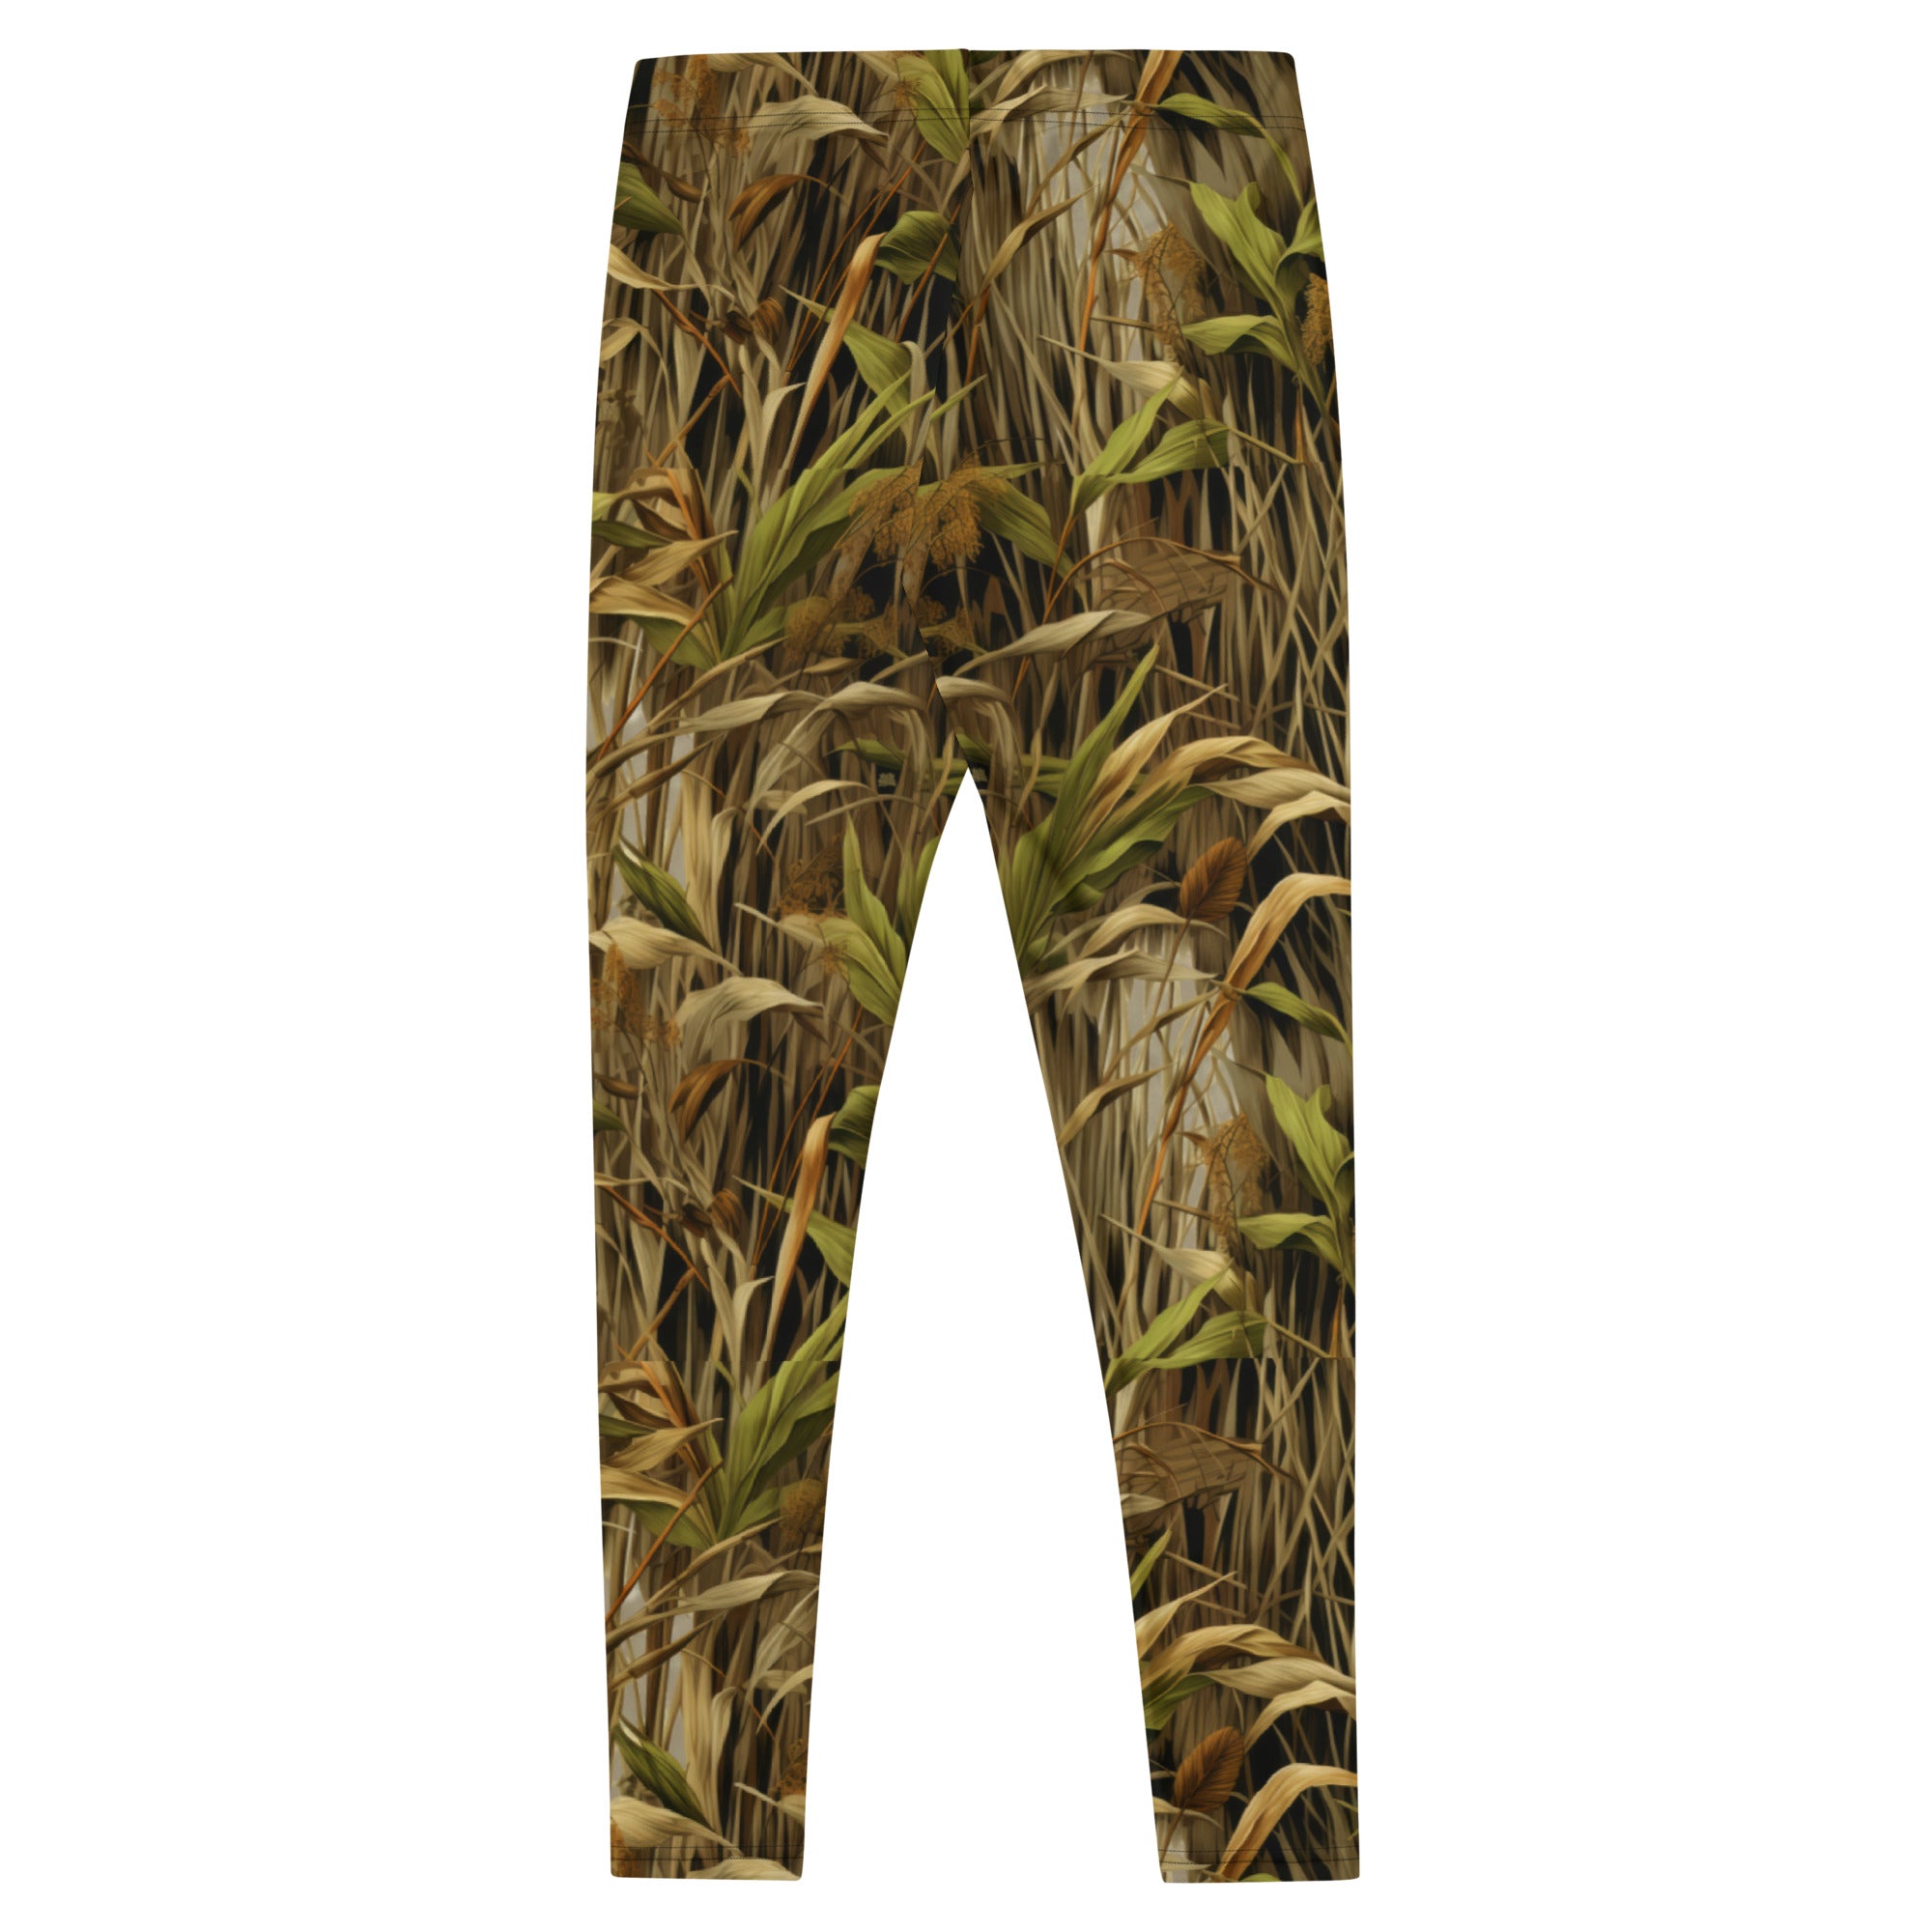 StealthBlend Marsh Camouflage Leggings